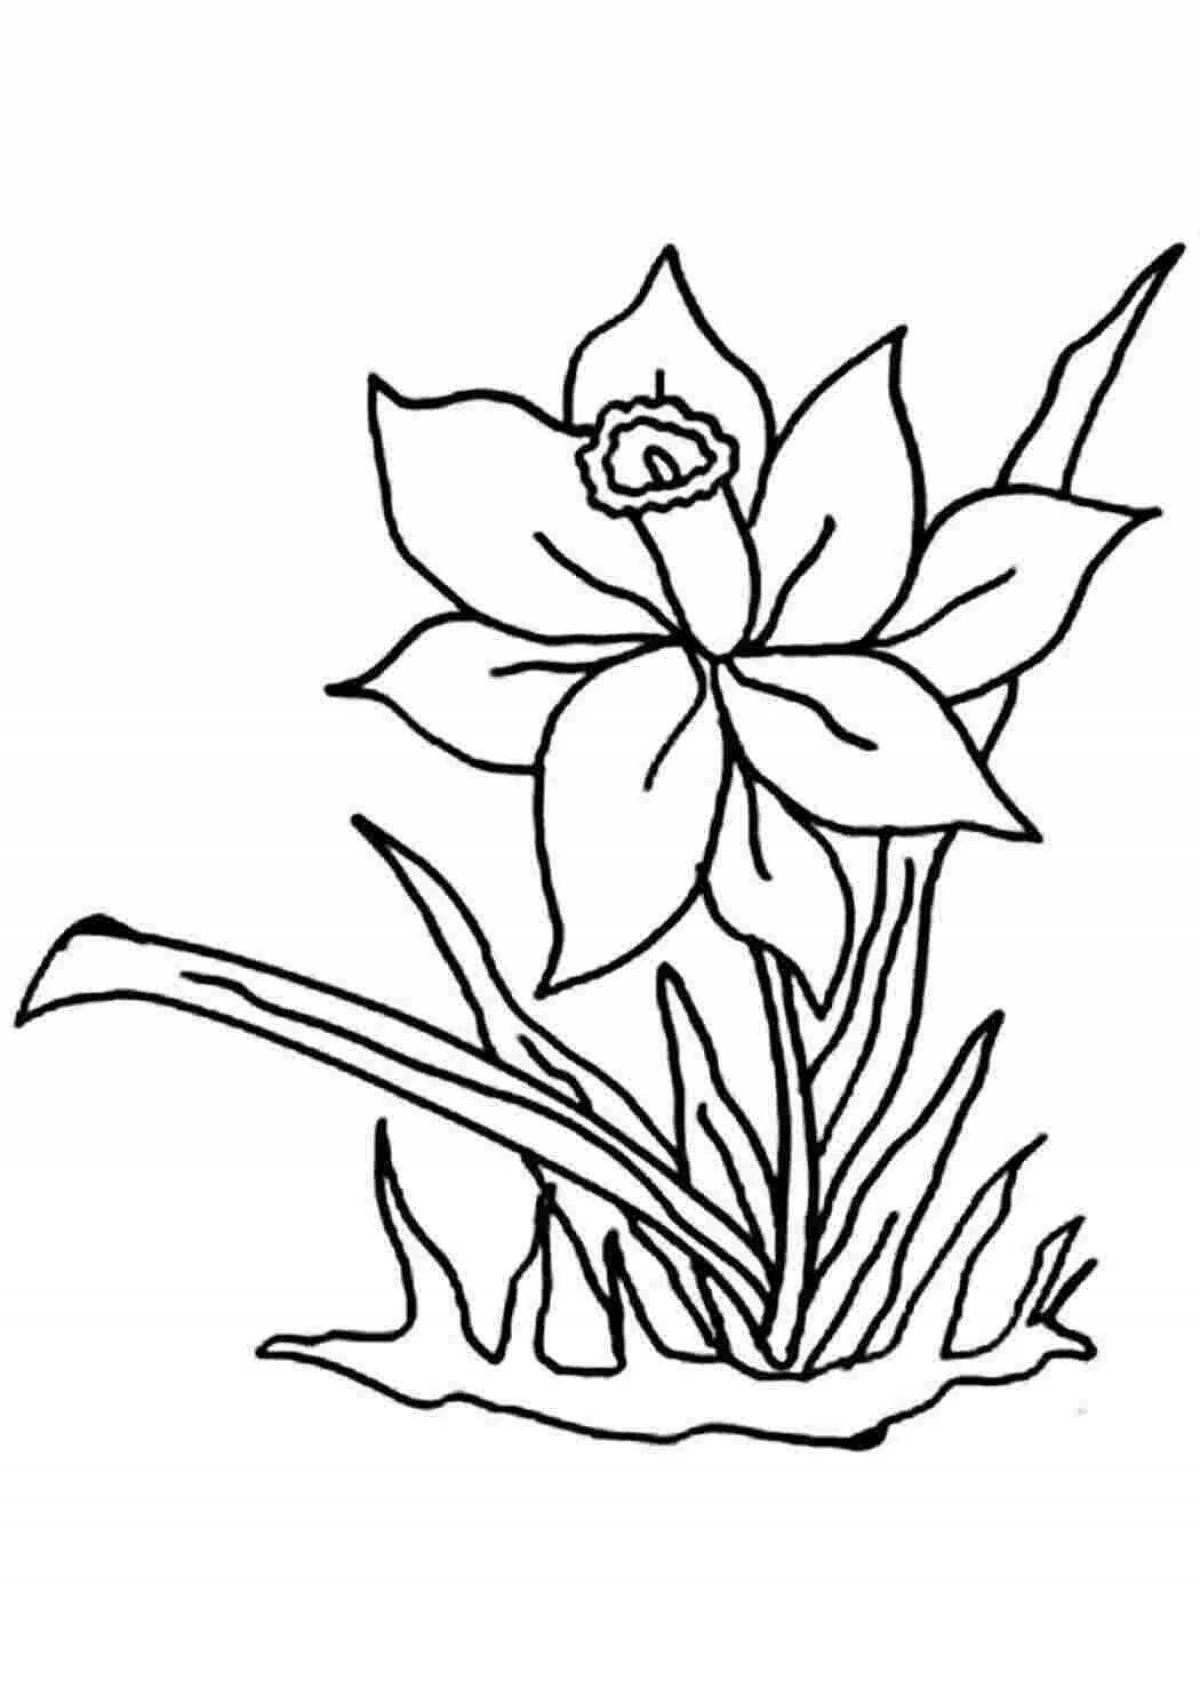 Раскраска яркий лазорический цветок